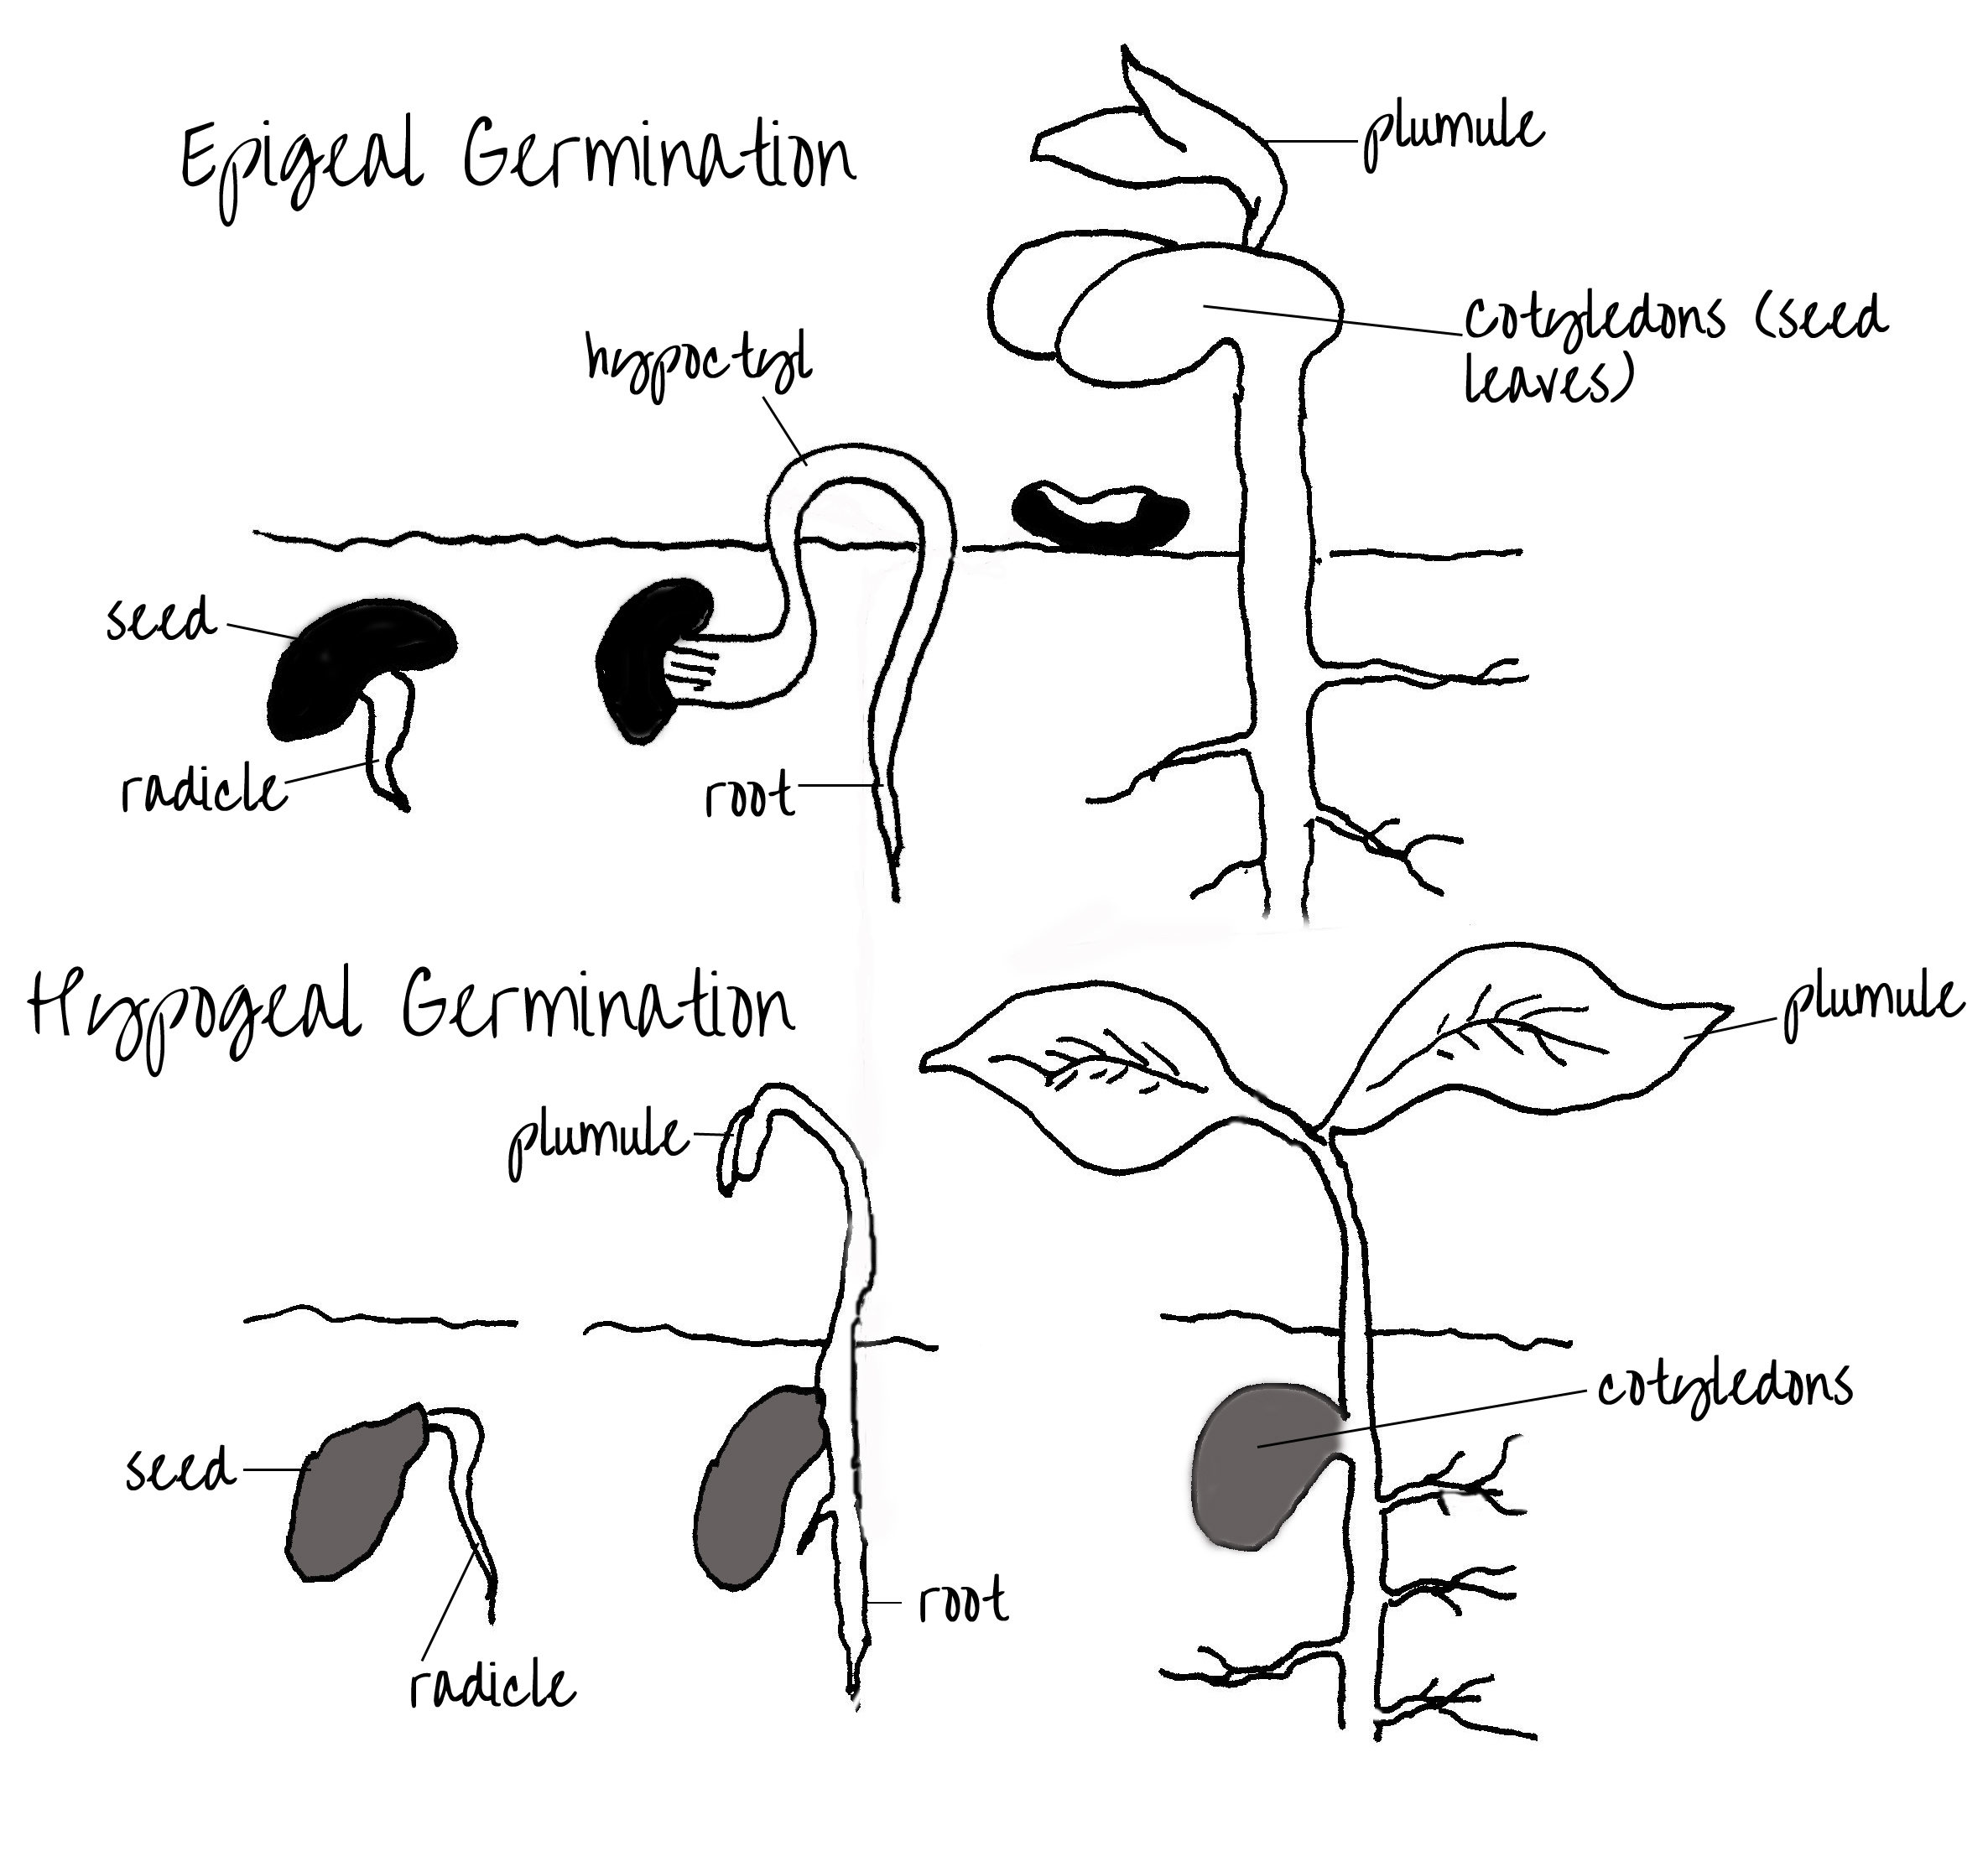 epigeal-hypogeal-germination